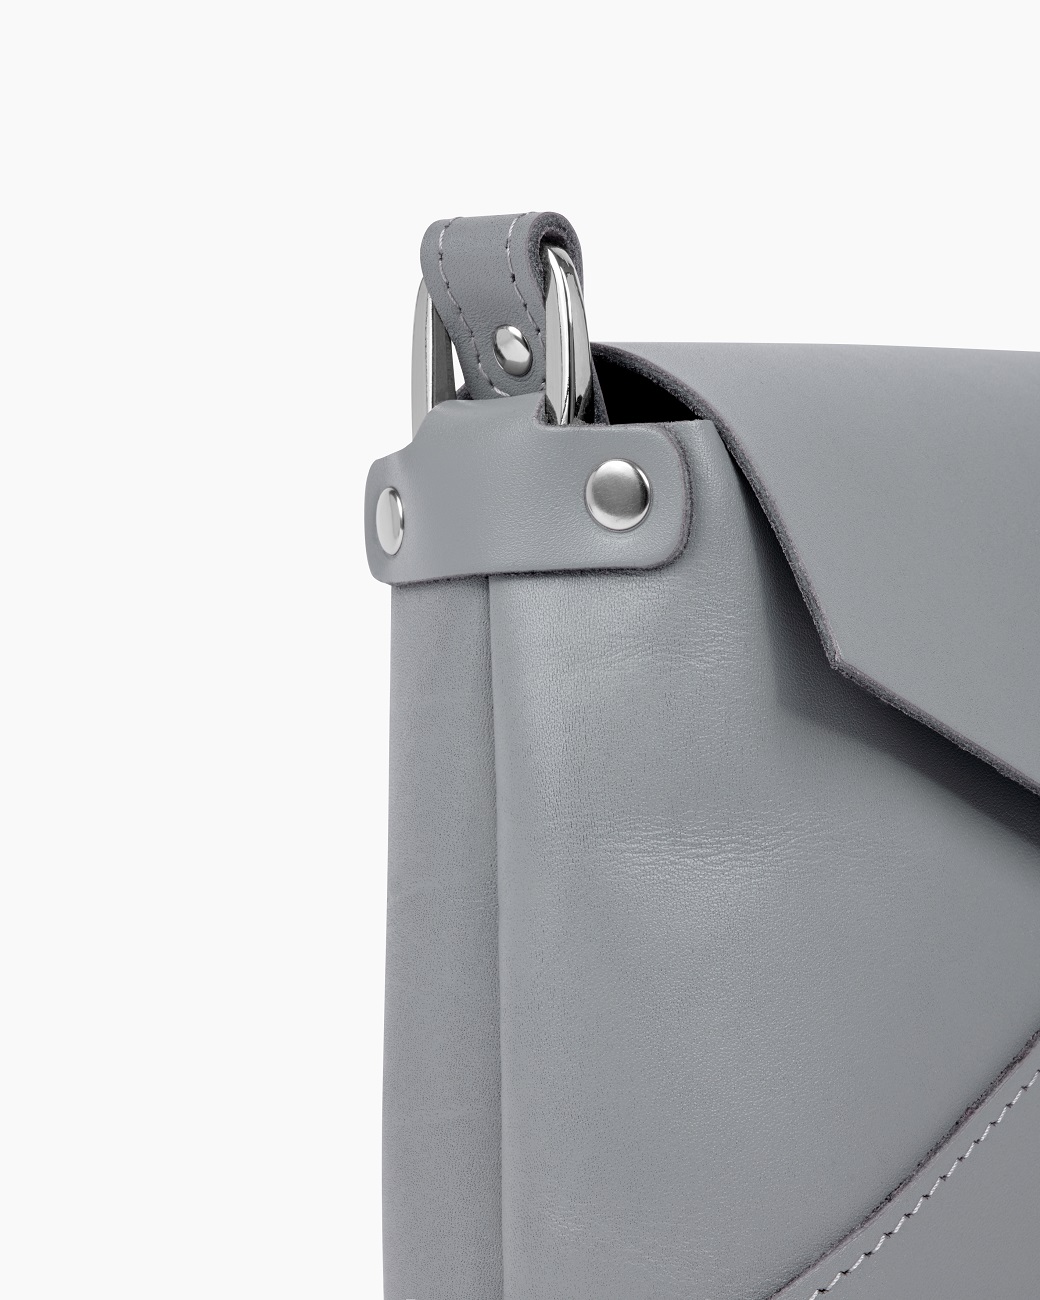 Женская сумка через плечо из натуральной кожи серая A003 grey